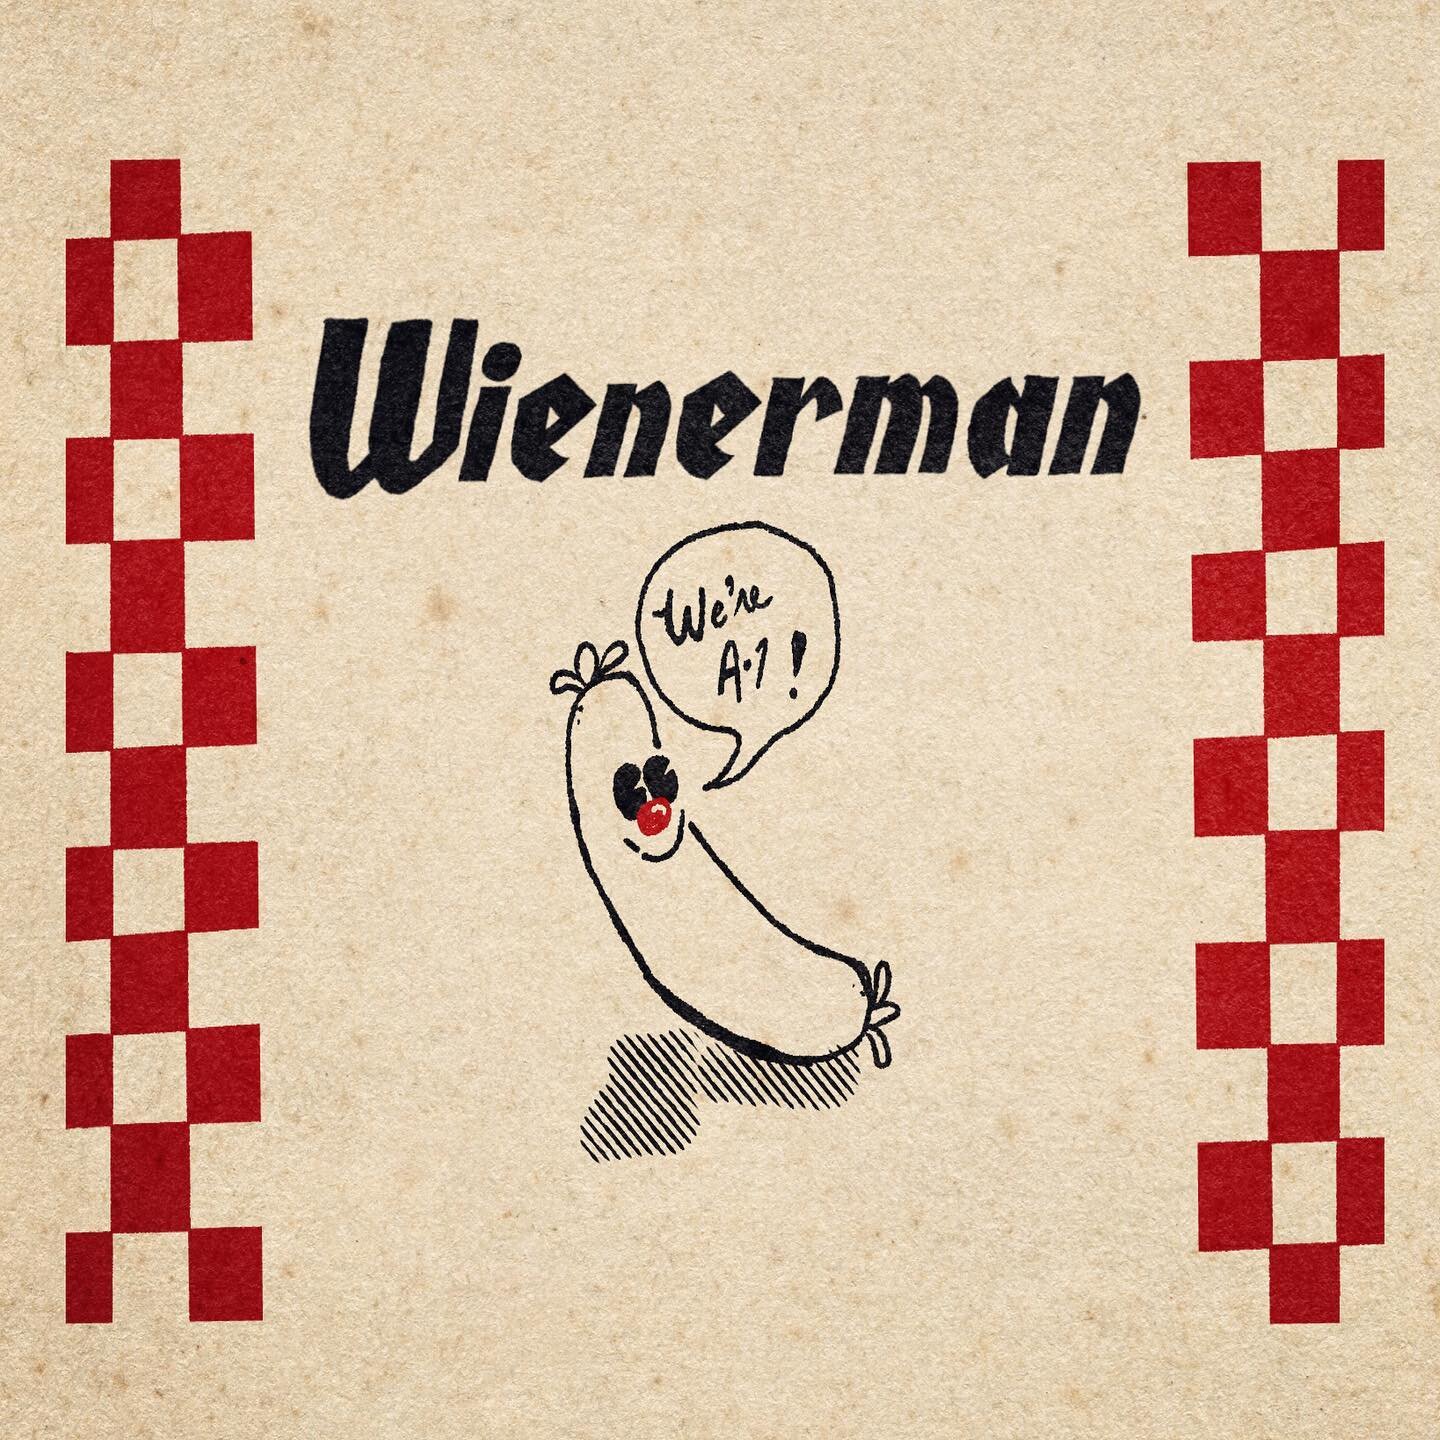 Wienerman: A-1 since Day-1!